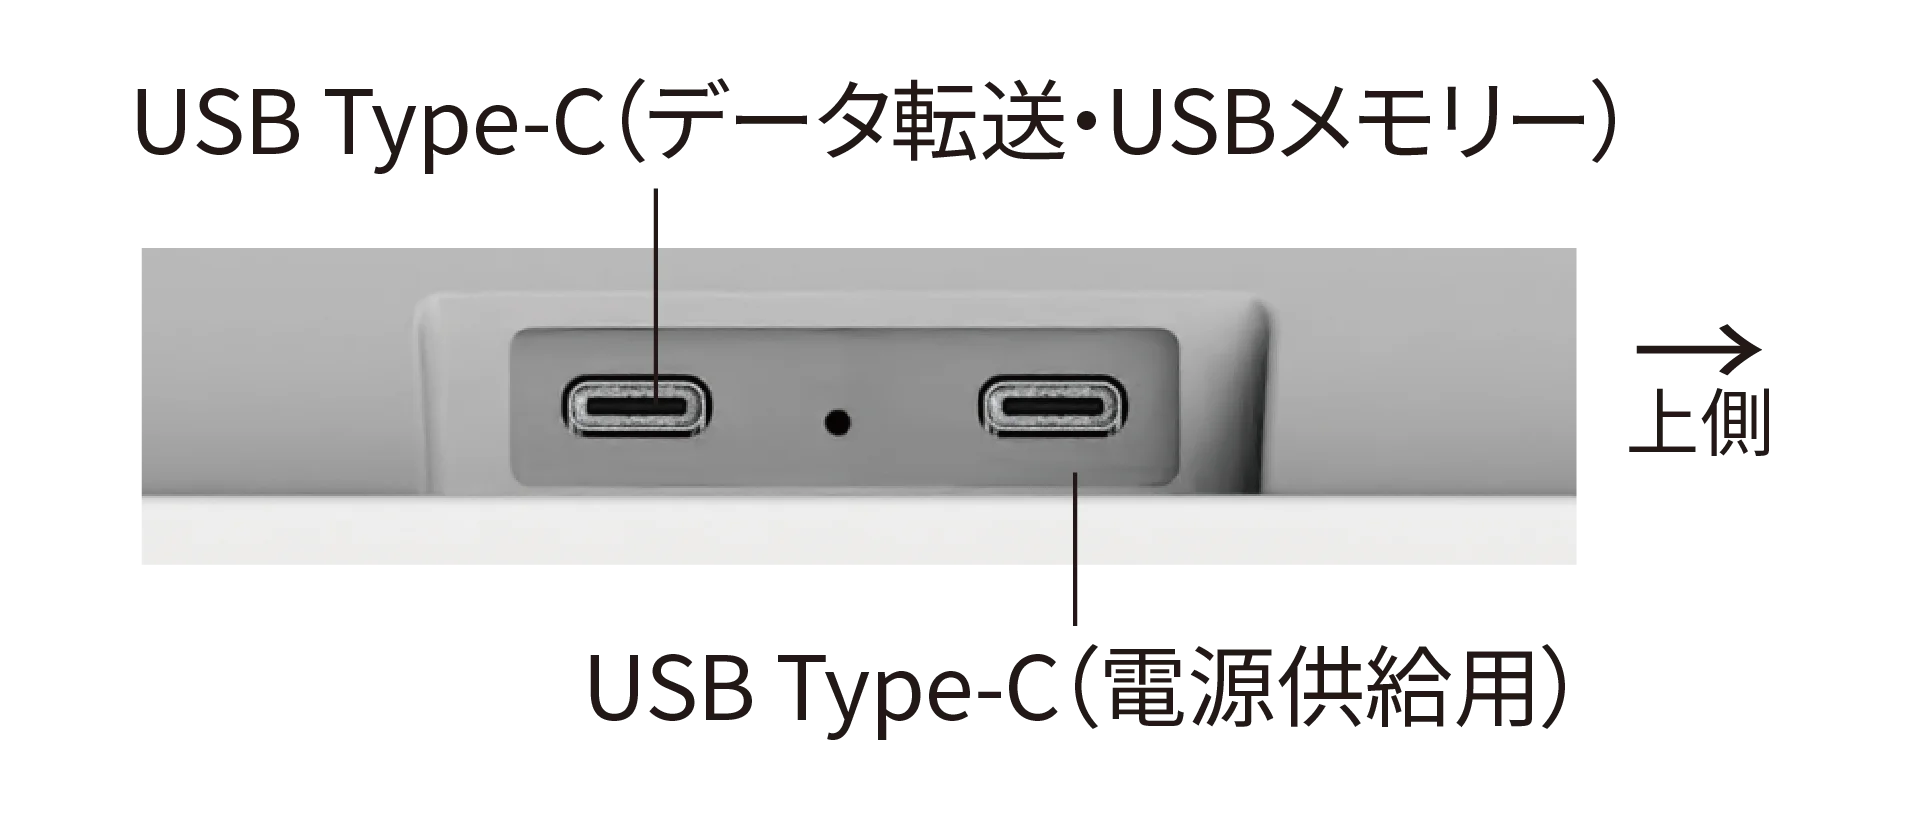 接続端子部分の写真：データ転送用と電源供給用のUSB Type-Cポートがそれぞれ一つづつあります。